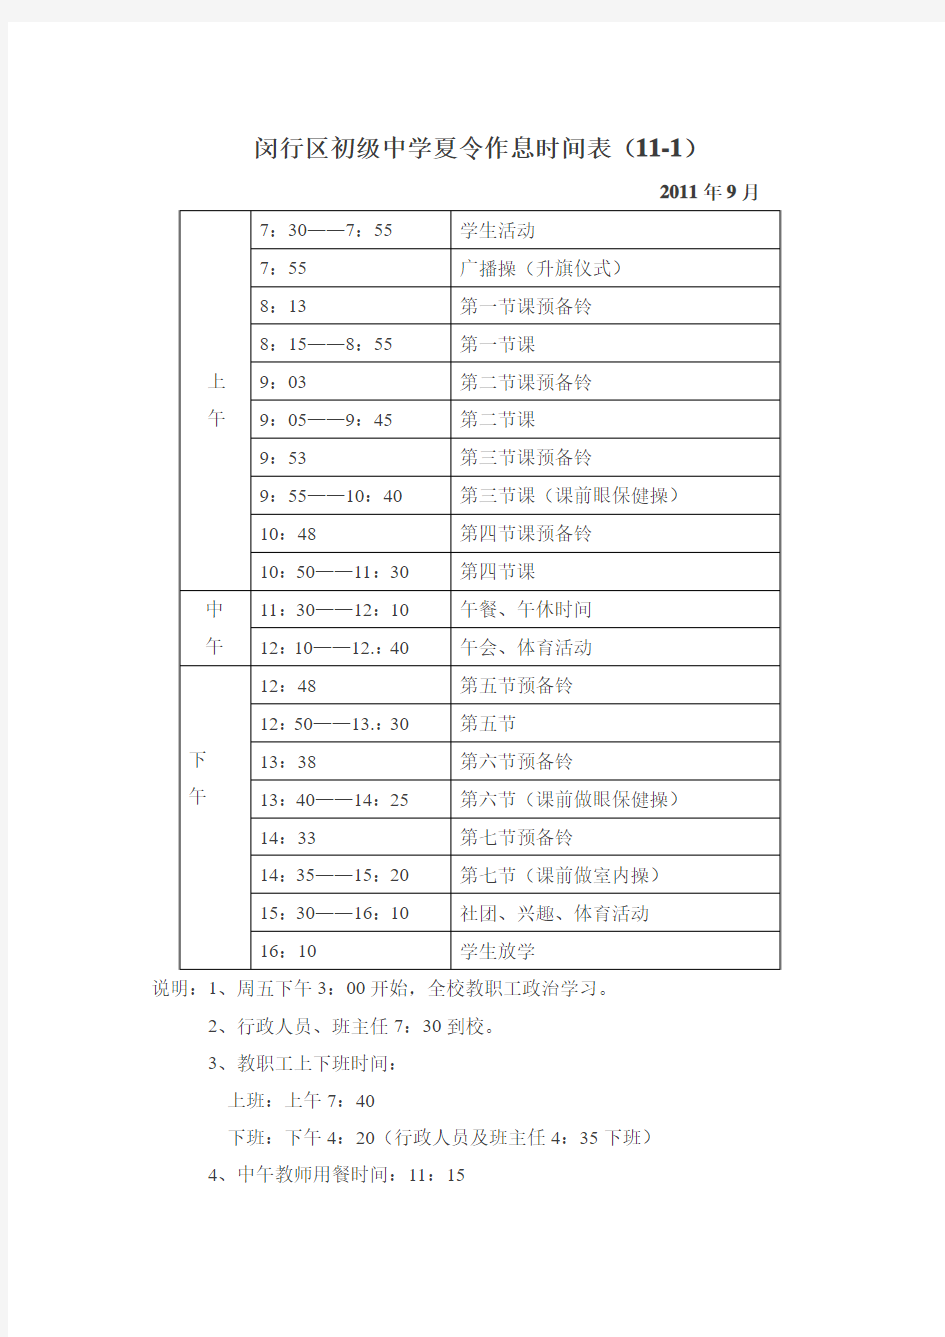 上海闵行区初级中学夏令作息时间表[1]